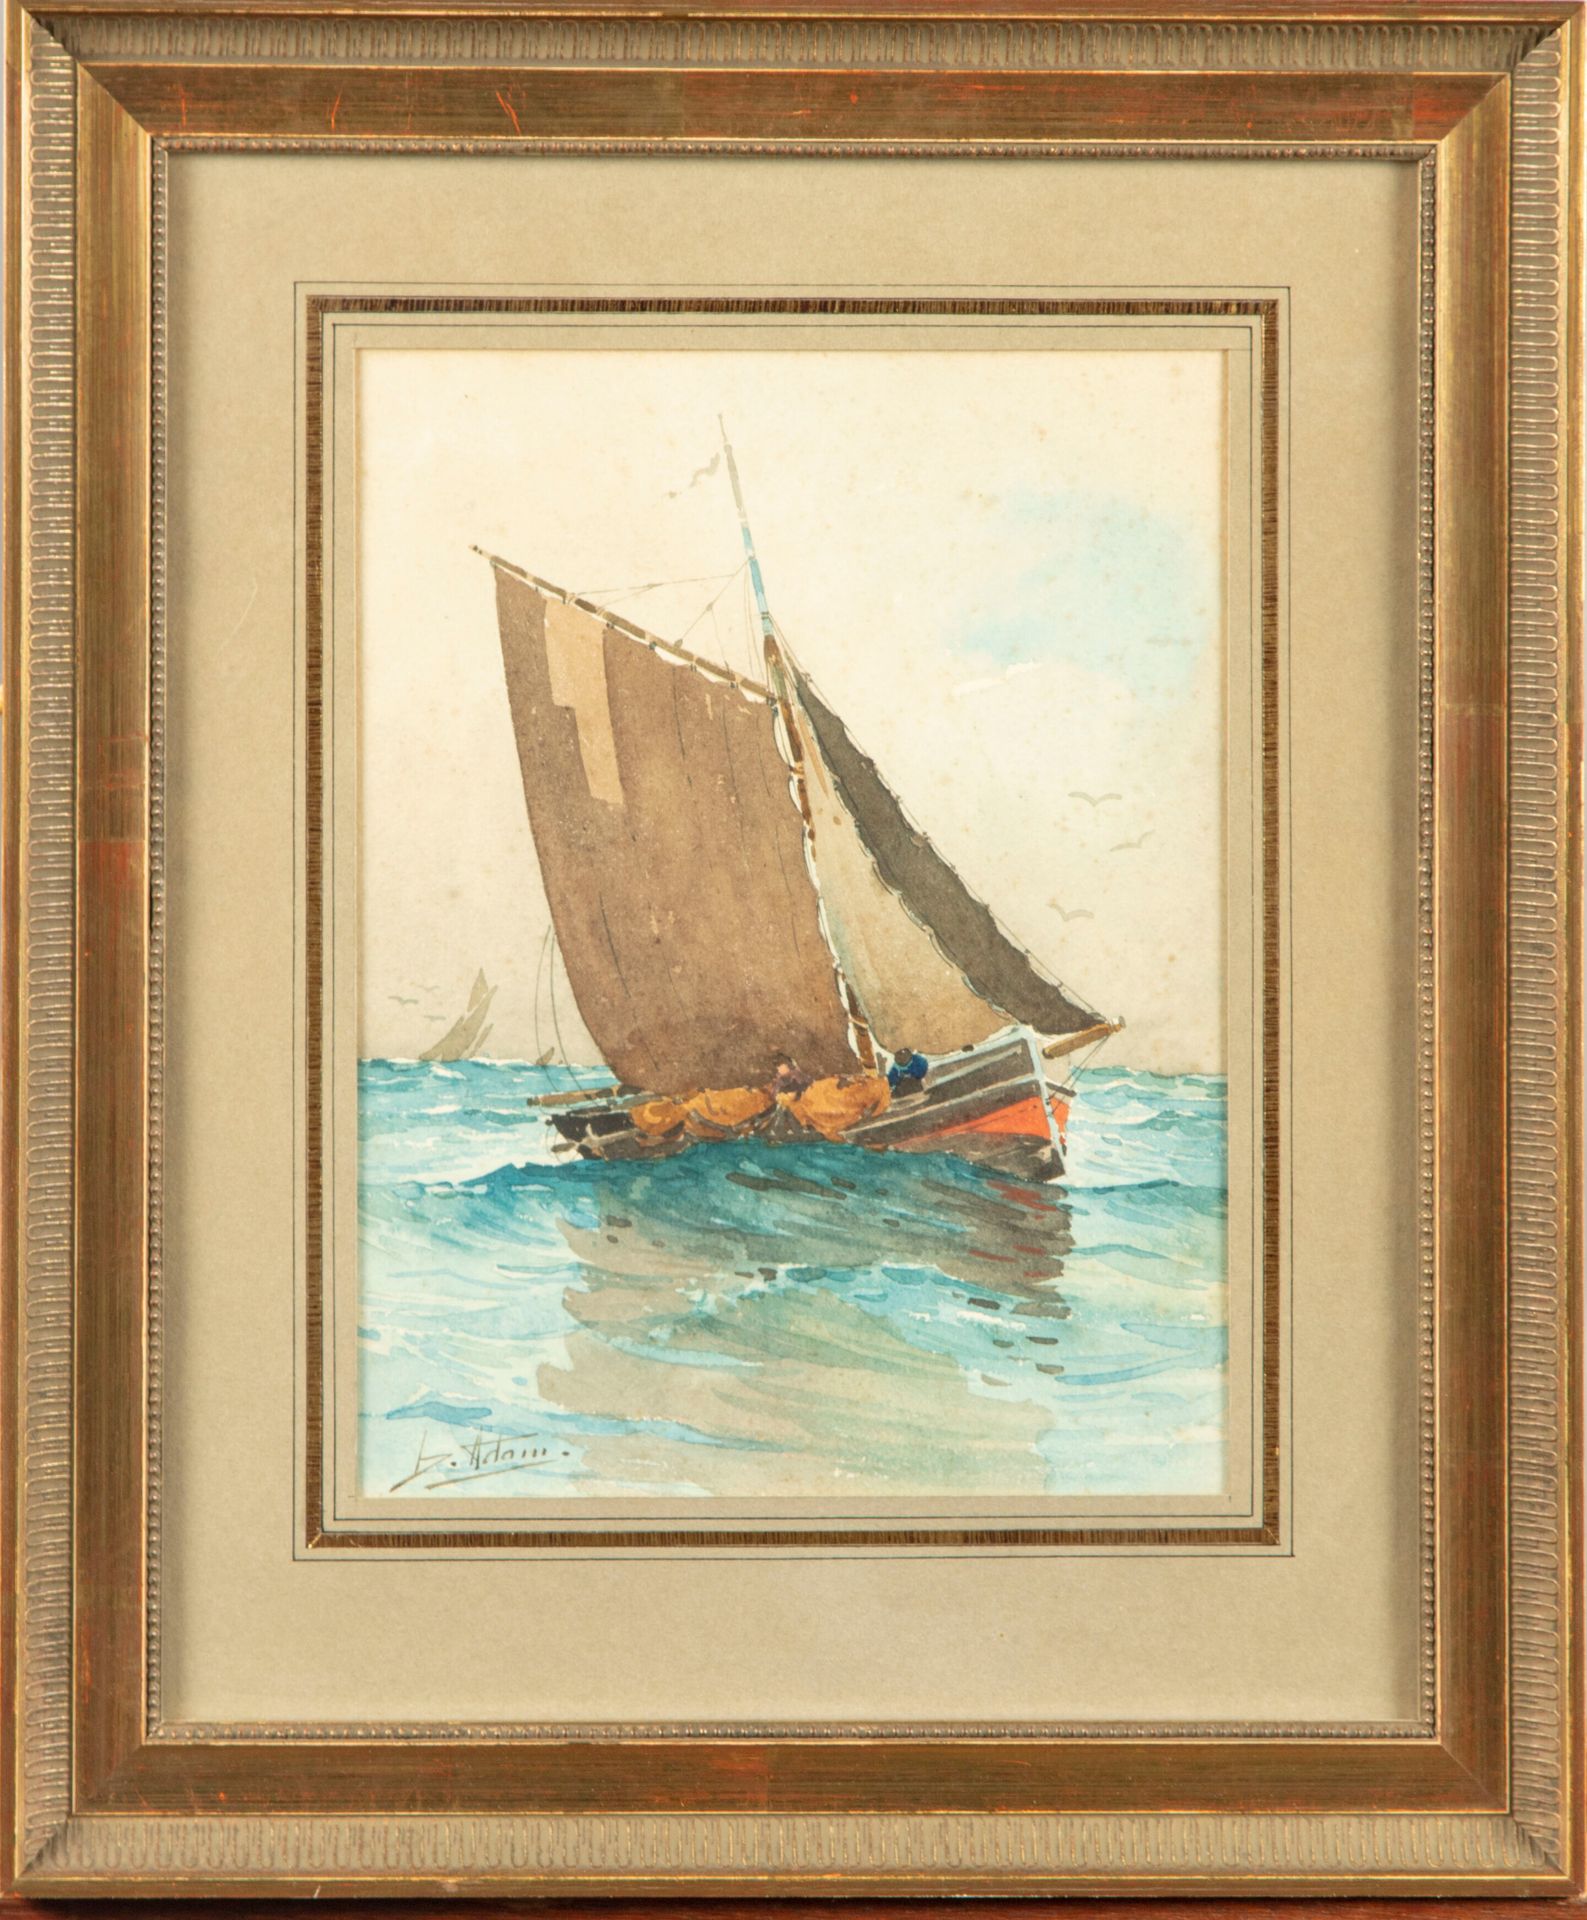 Null D. ADAM 

Bateau à voile 

Aquarelle, signée en bas à gauche

24 x 18 cm